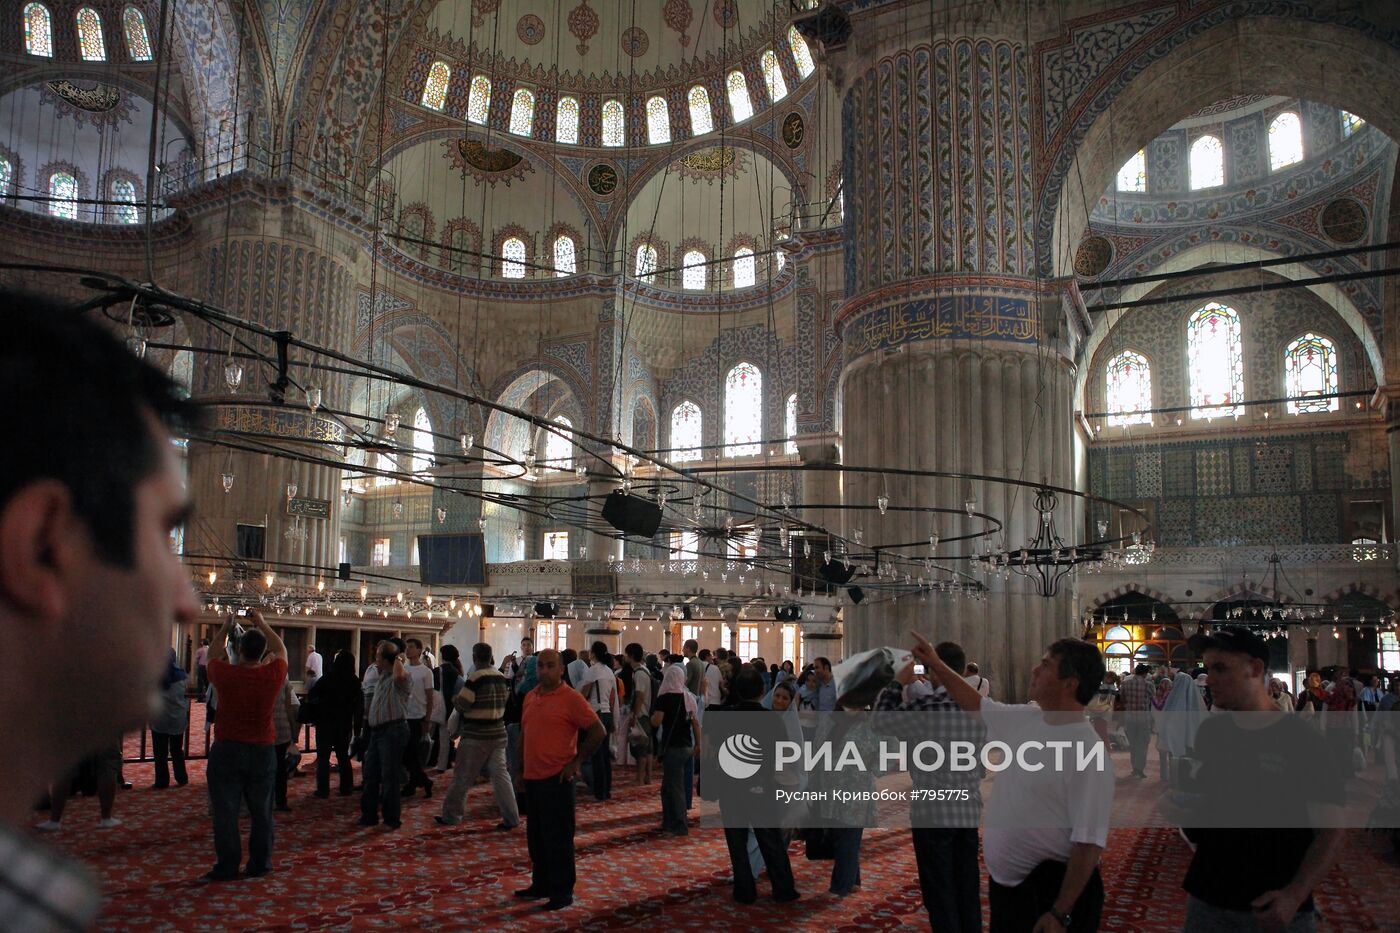 Мечеть султана Ахмета